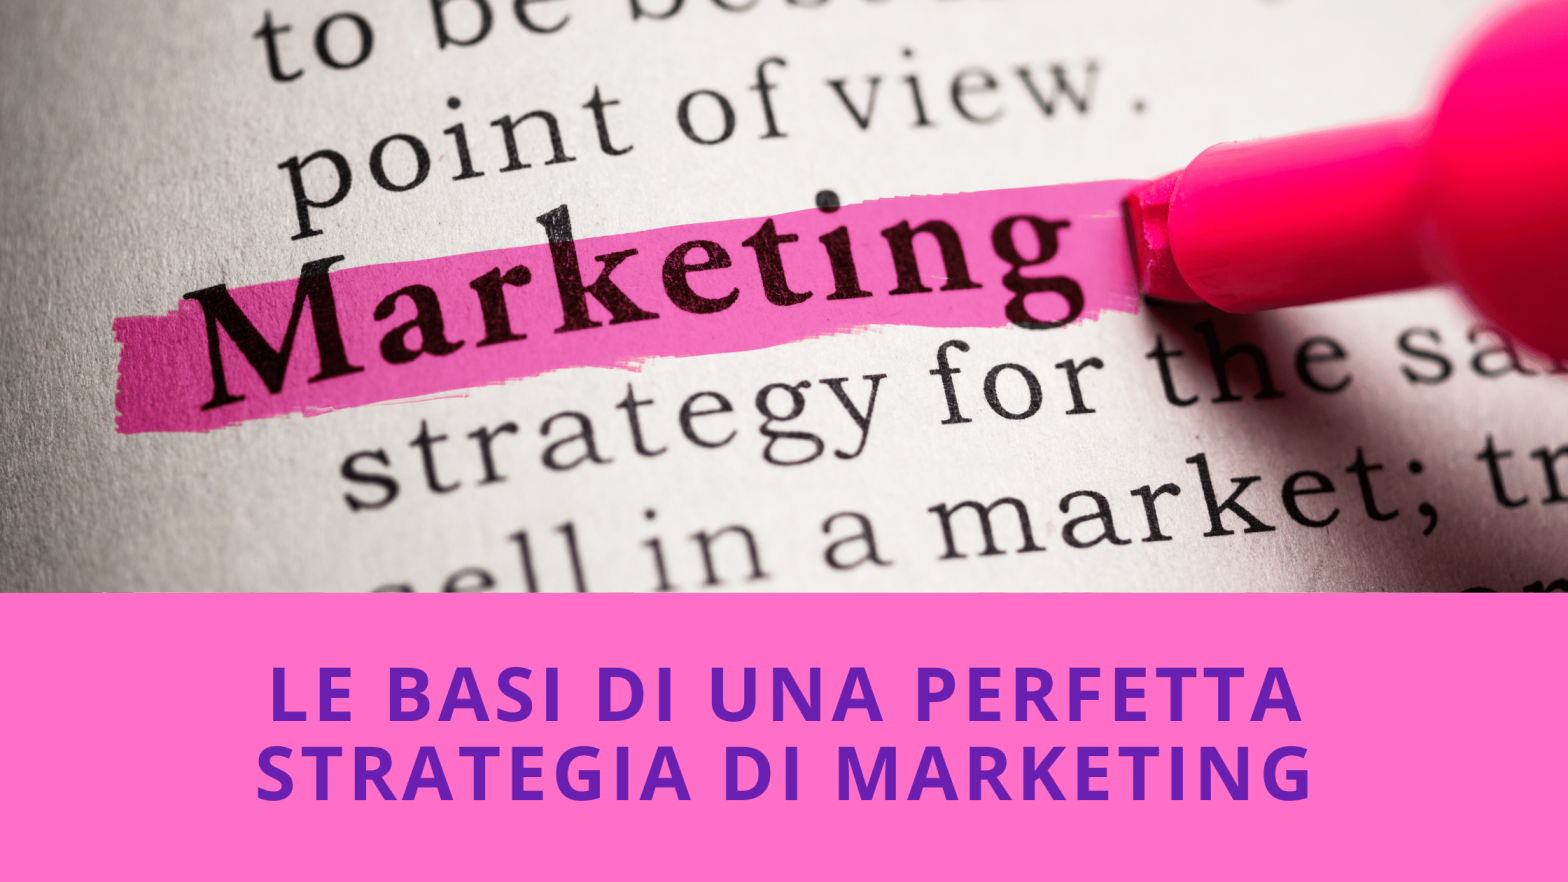 Le basi di una perfetta strategia di Marketing